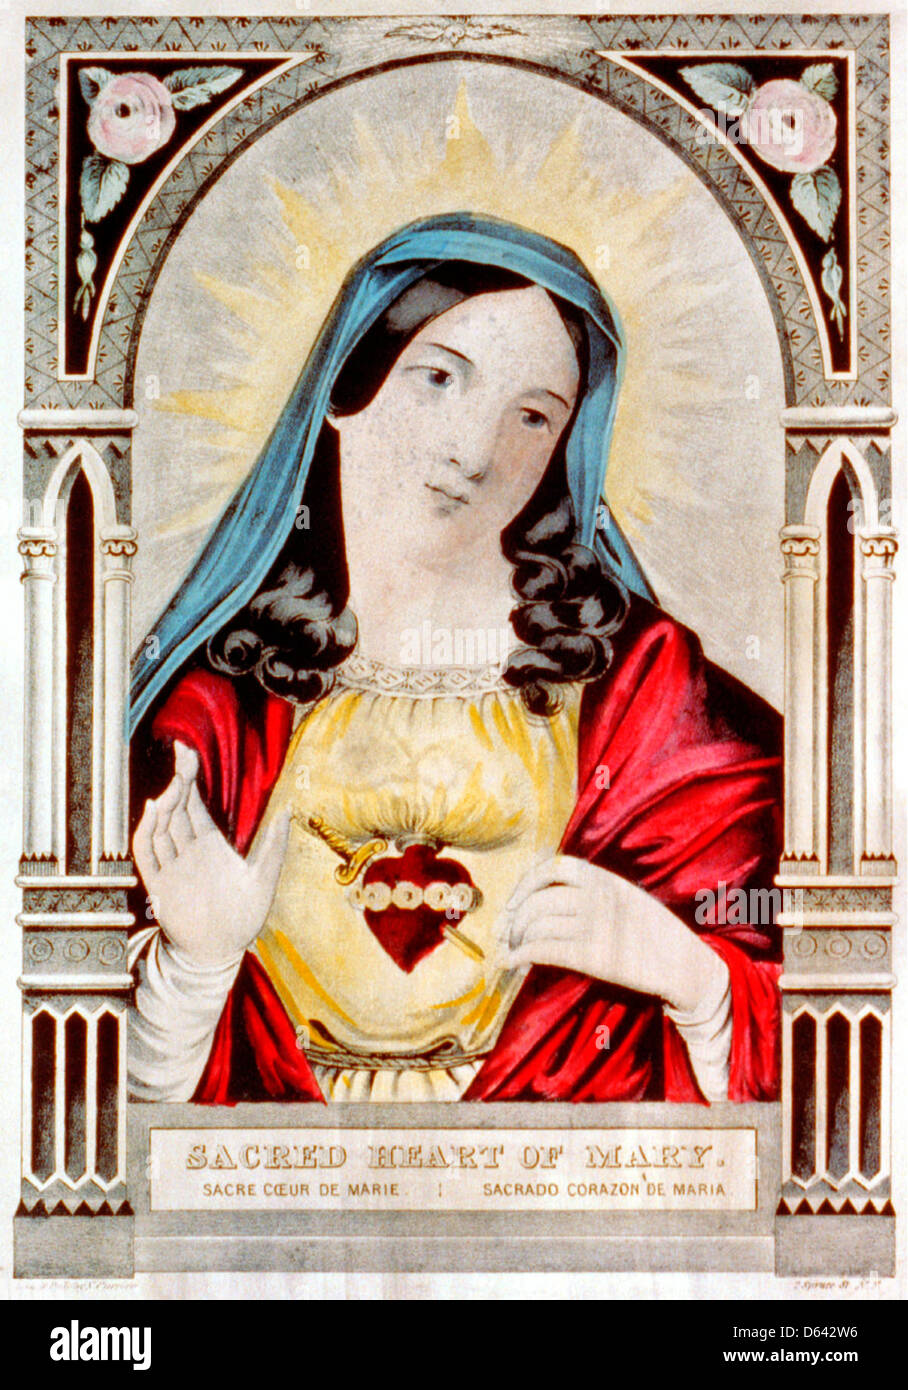 Sacré Coeur de Marie : le Sacré Coeur de Marie / sacrado corazon de Maria - Lithographie colorée à la main vers 1850 Banque D'Images